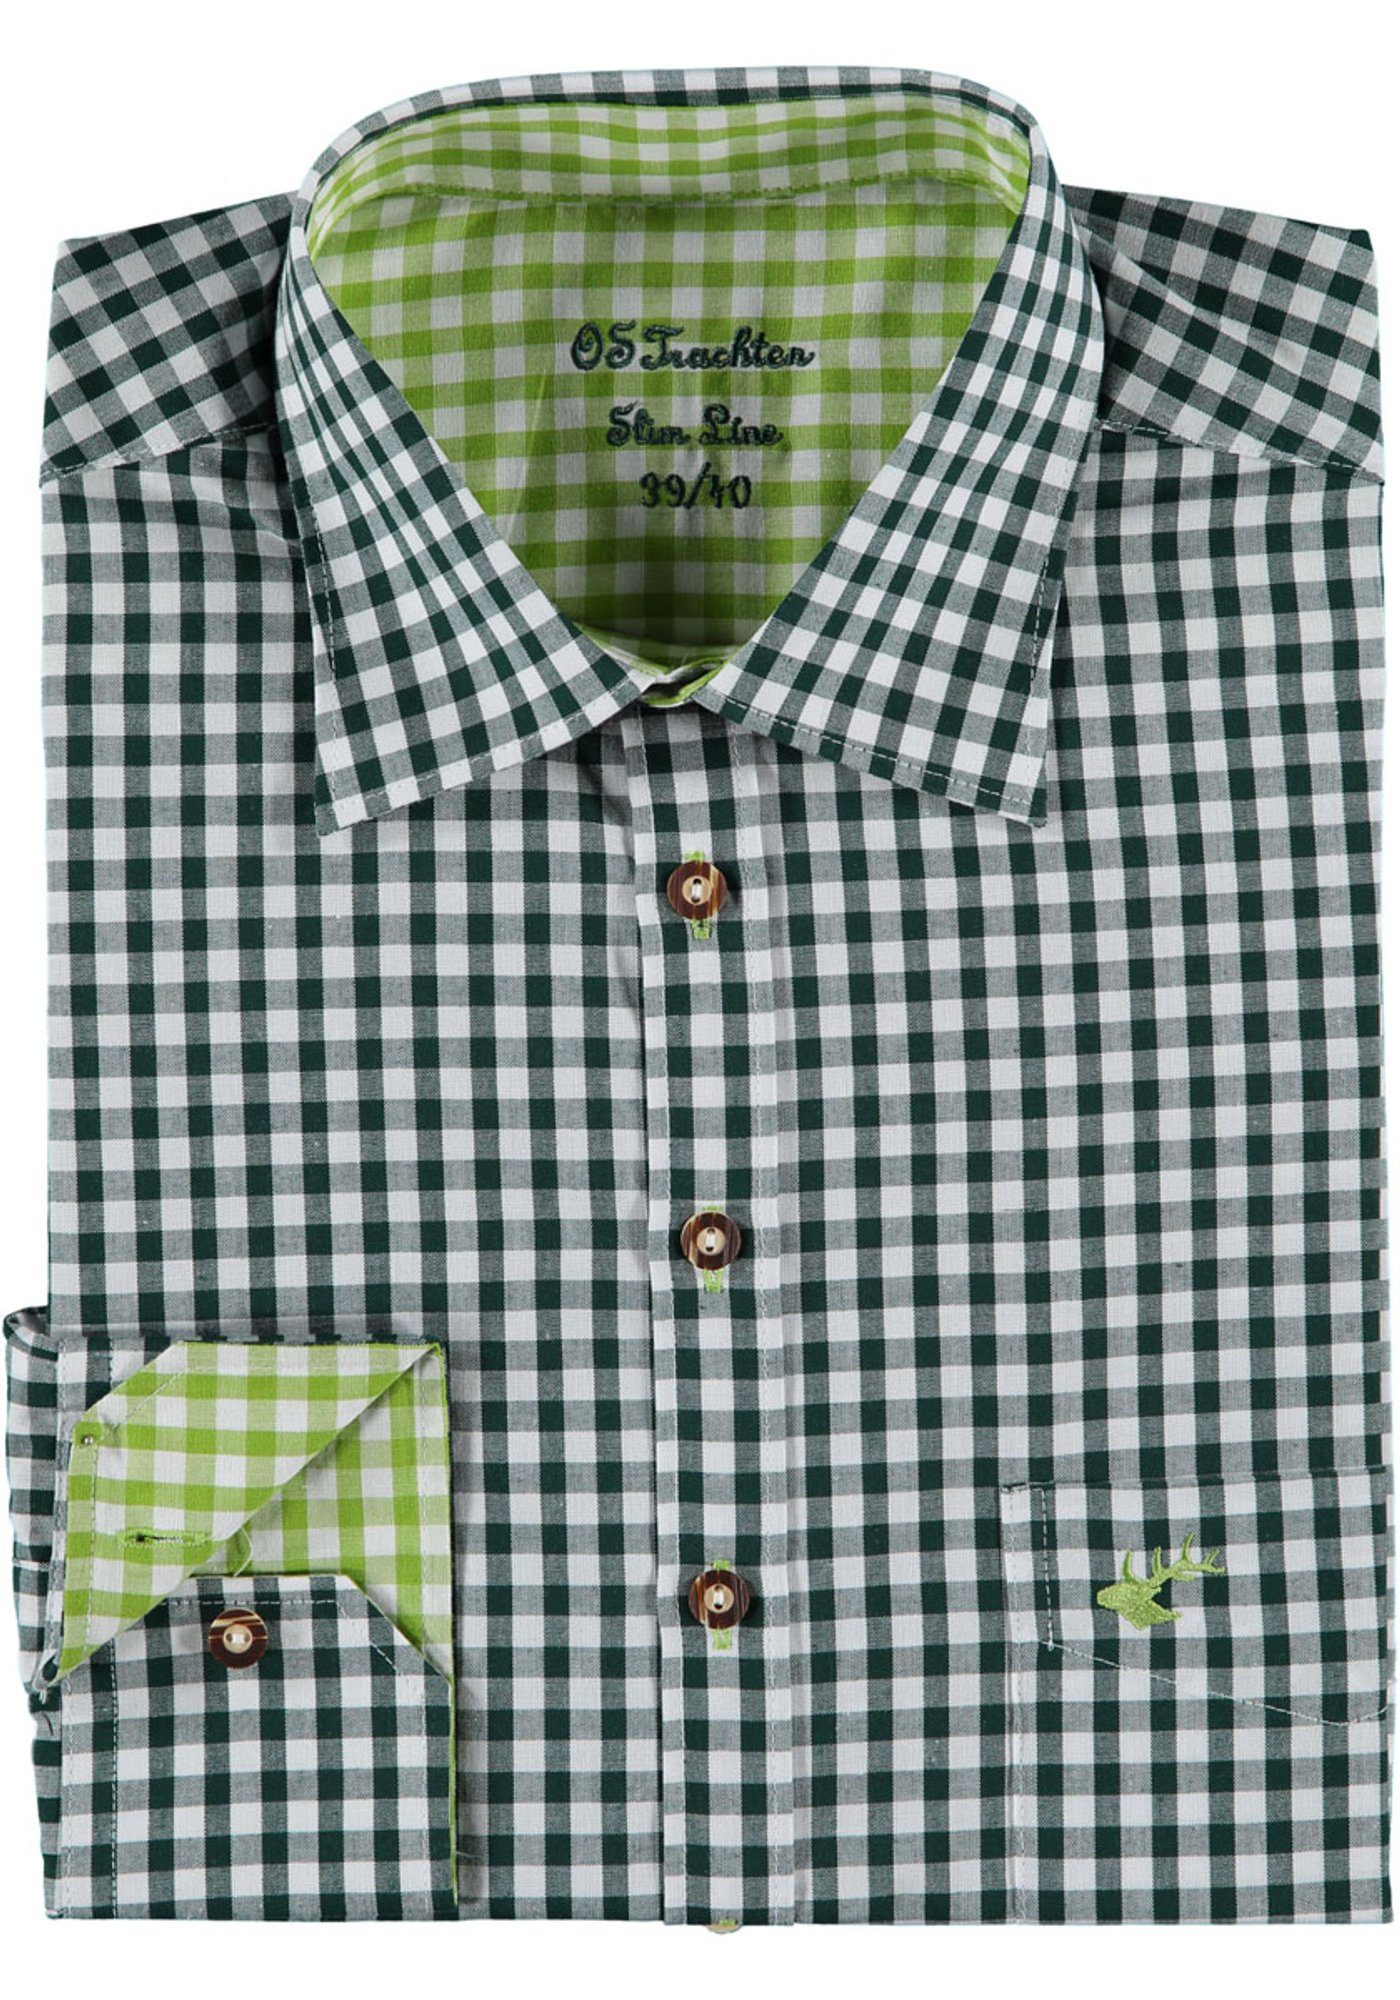 Ärmeln und mit Smegy in Hirsch-Stickerei, lang Trachtenhemd Rumpf dunkelgrün extra OS-Trachten